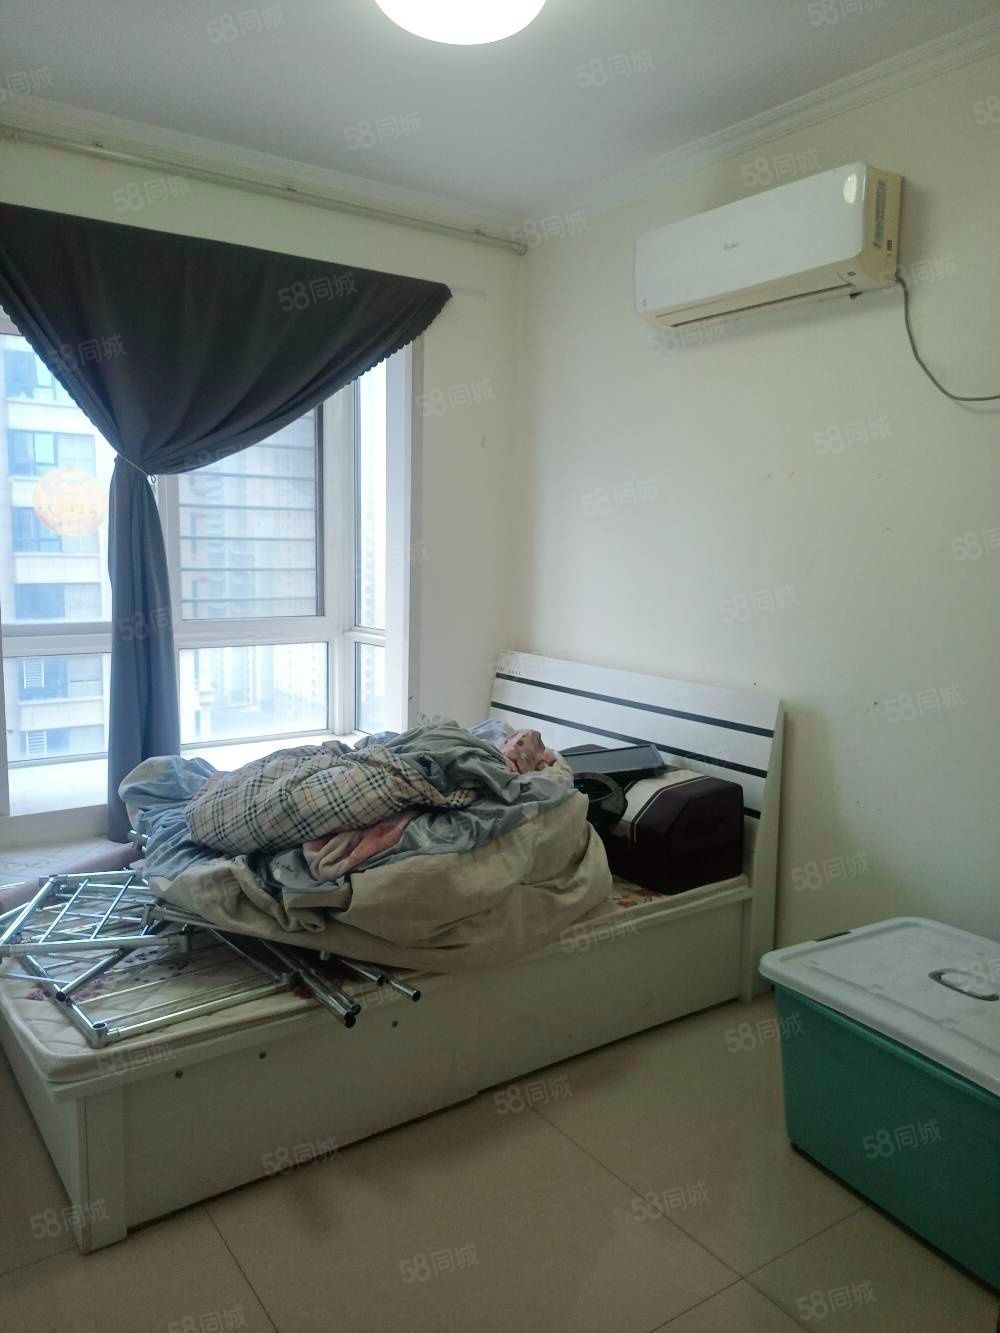 郭杜 茅坡新城房子有2空调,是纯空房,必需年付